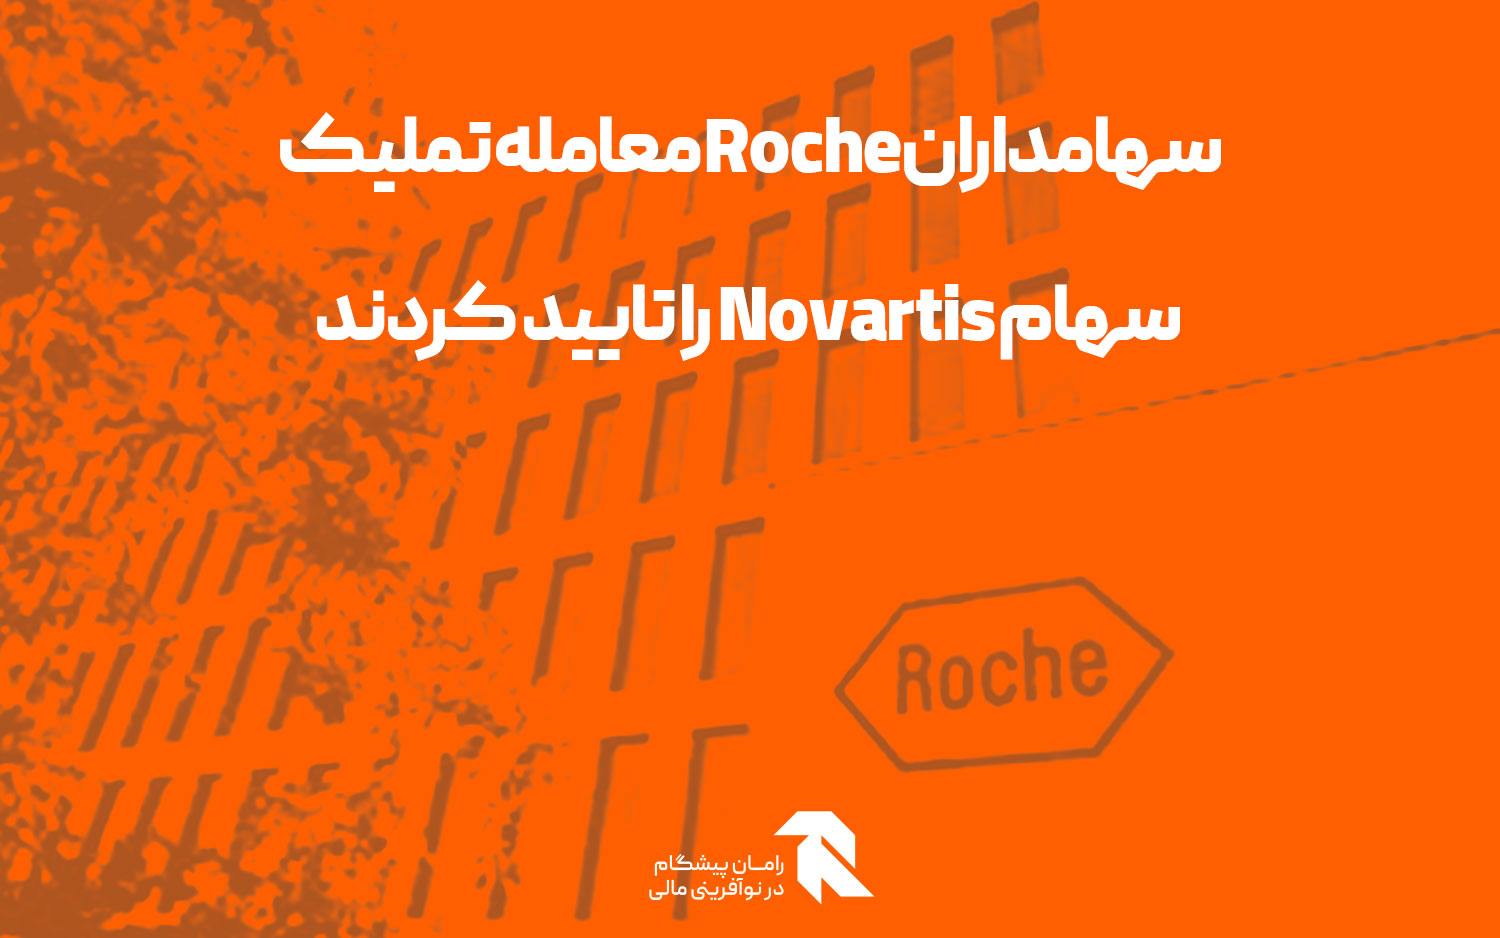 سهامداران Roche معامله تملیک سهام Novartis را تایید کردند